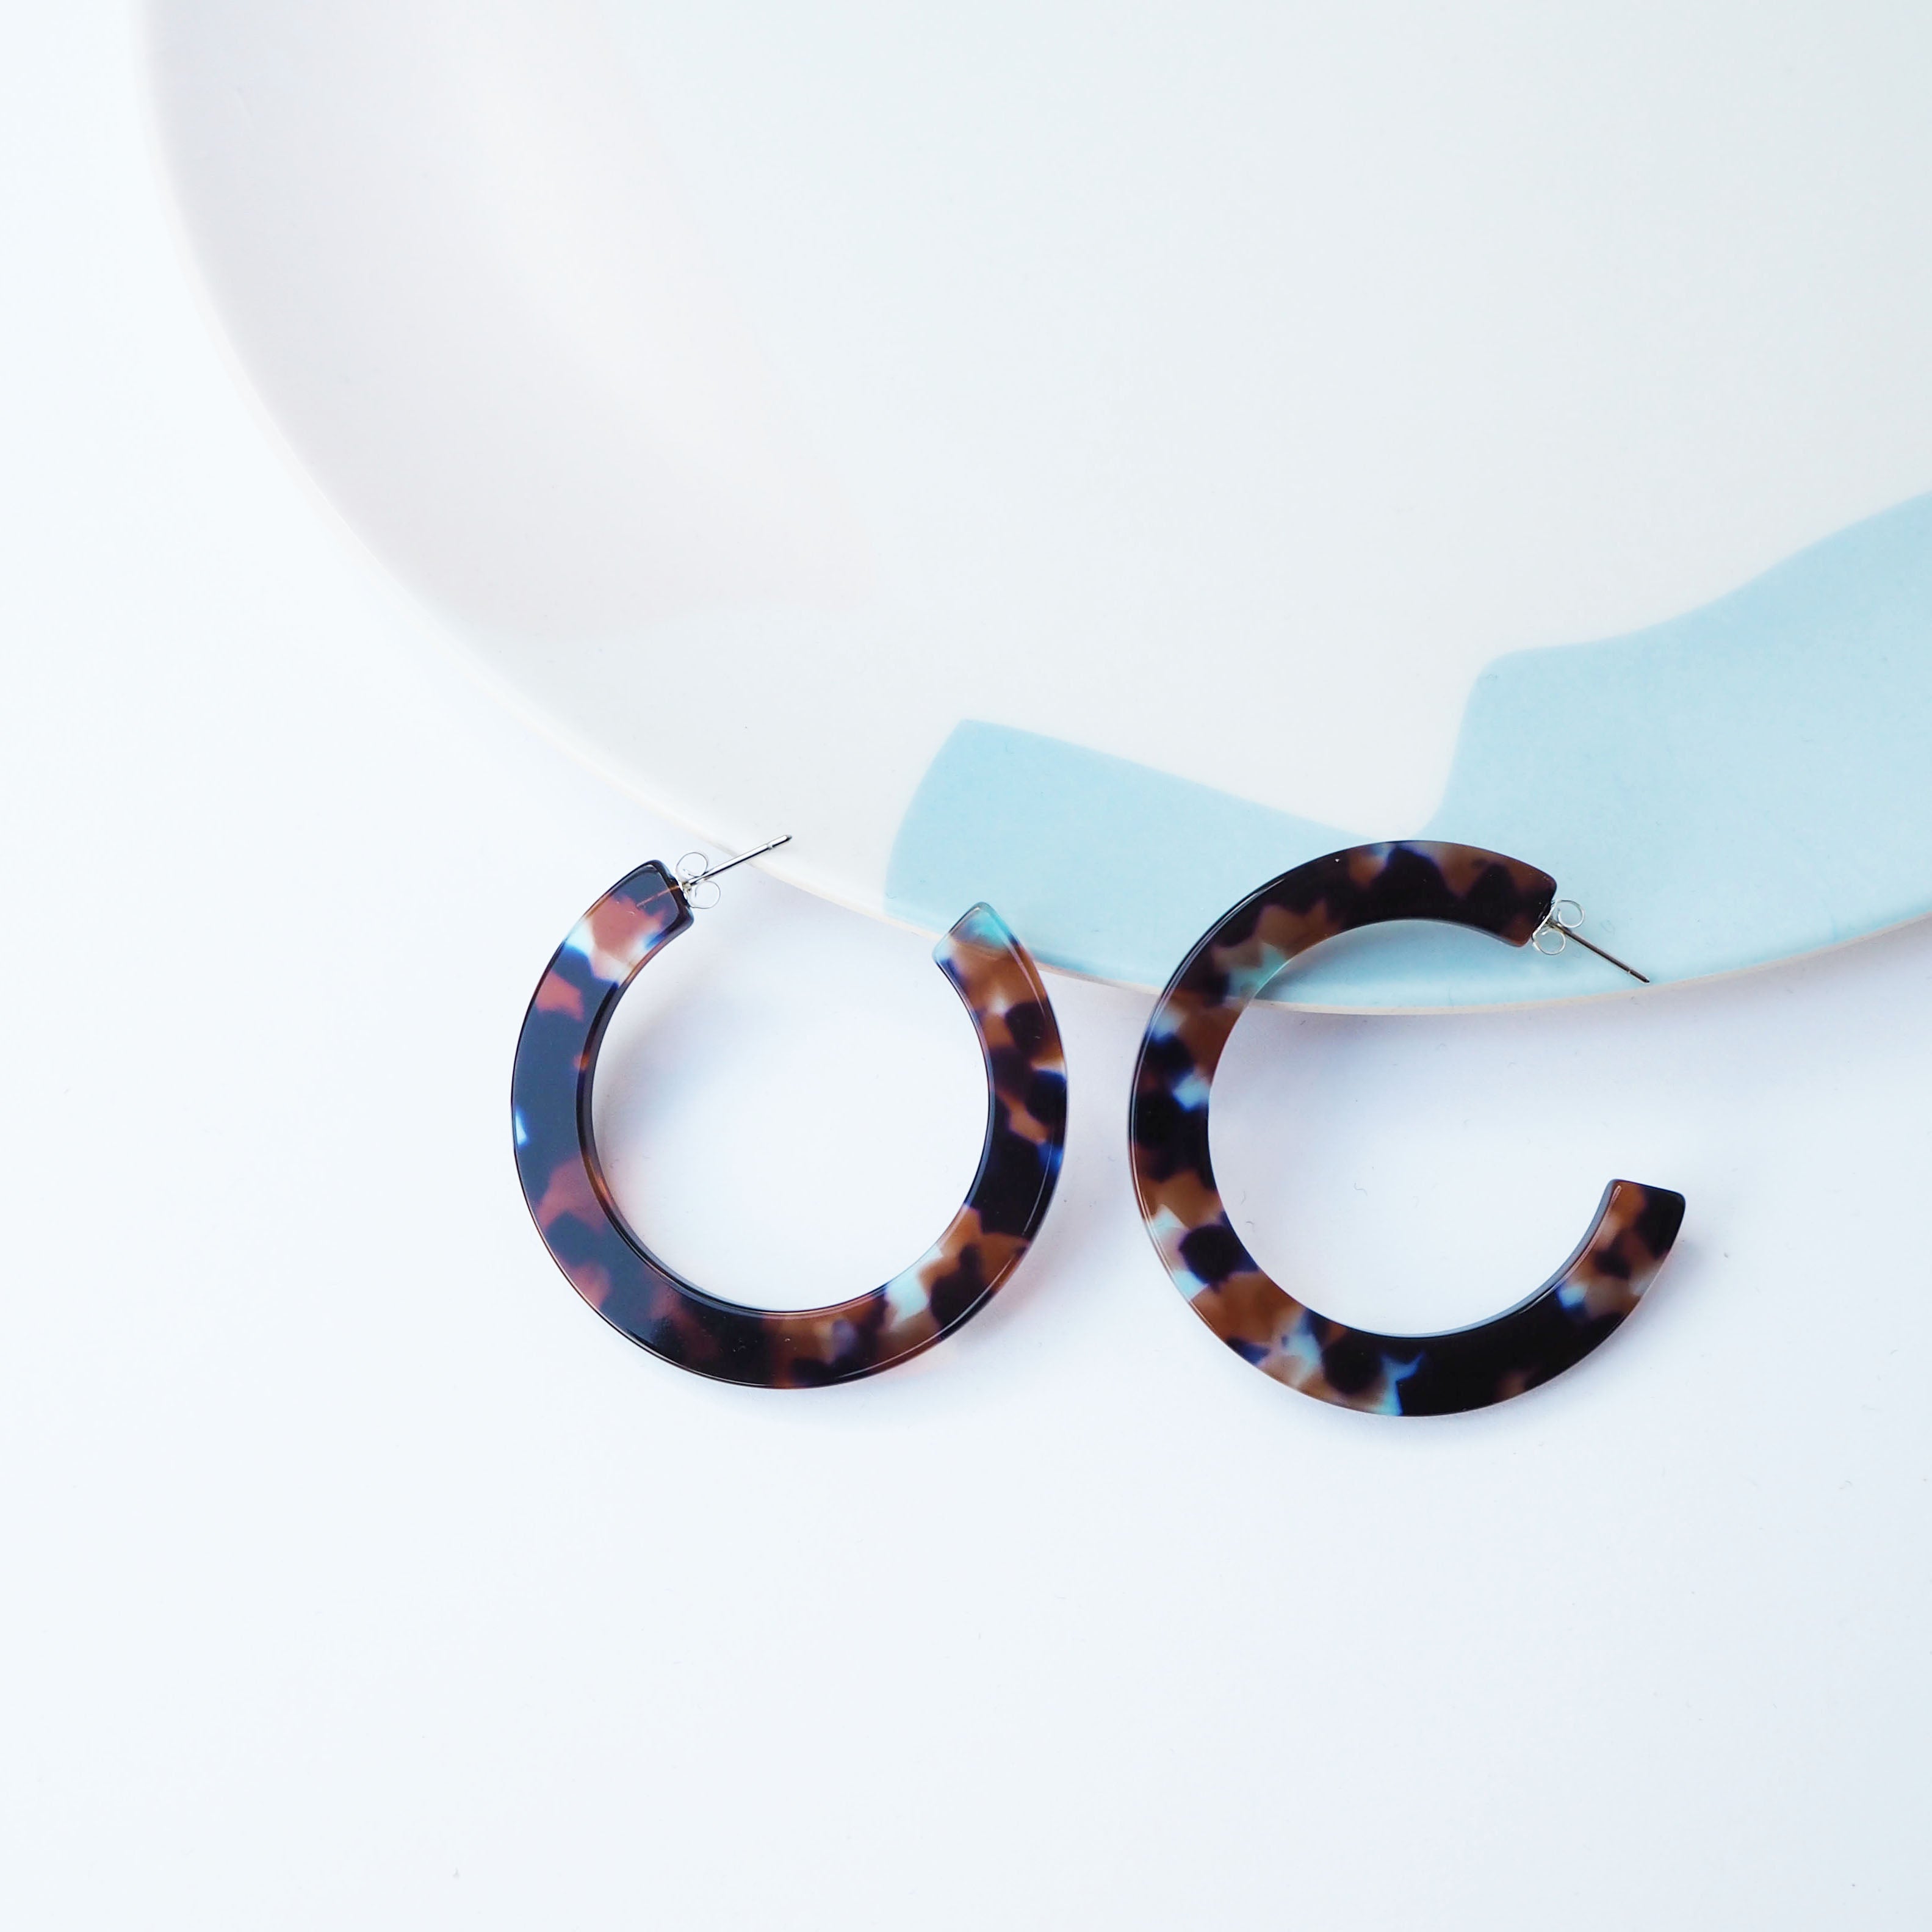 Coral Statement Hoop Earrings | Large | Dark Brown, Blue, Clear | by Custom Made - Lifestory